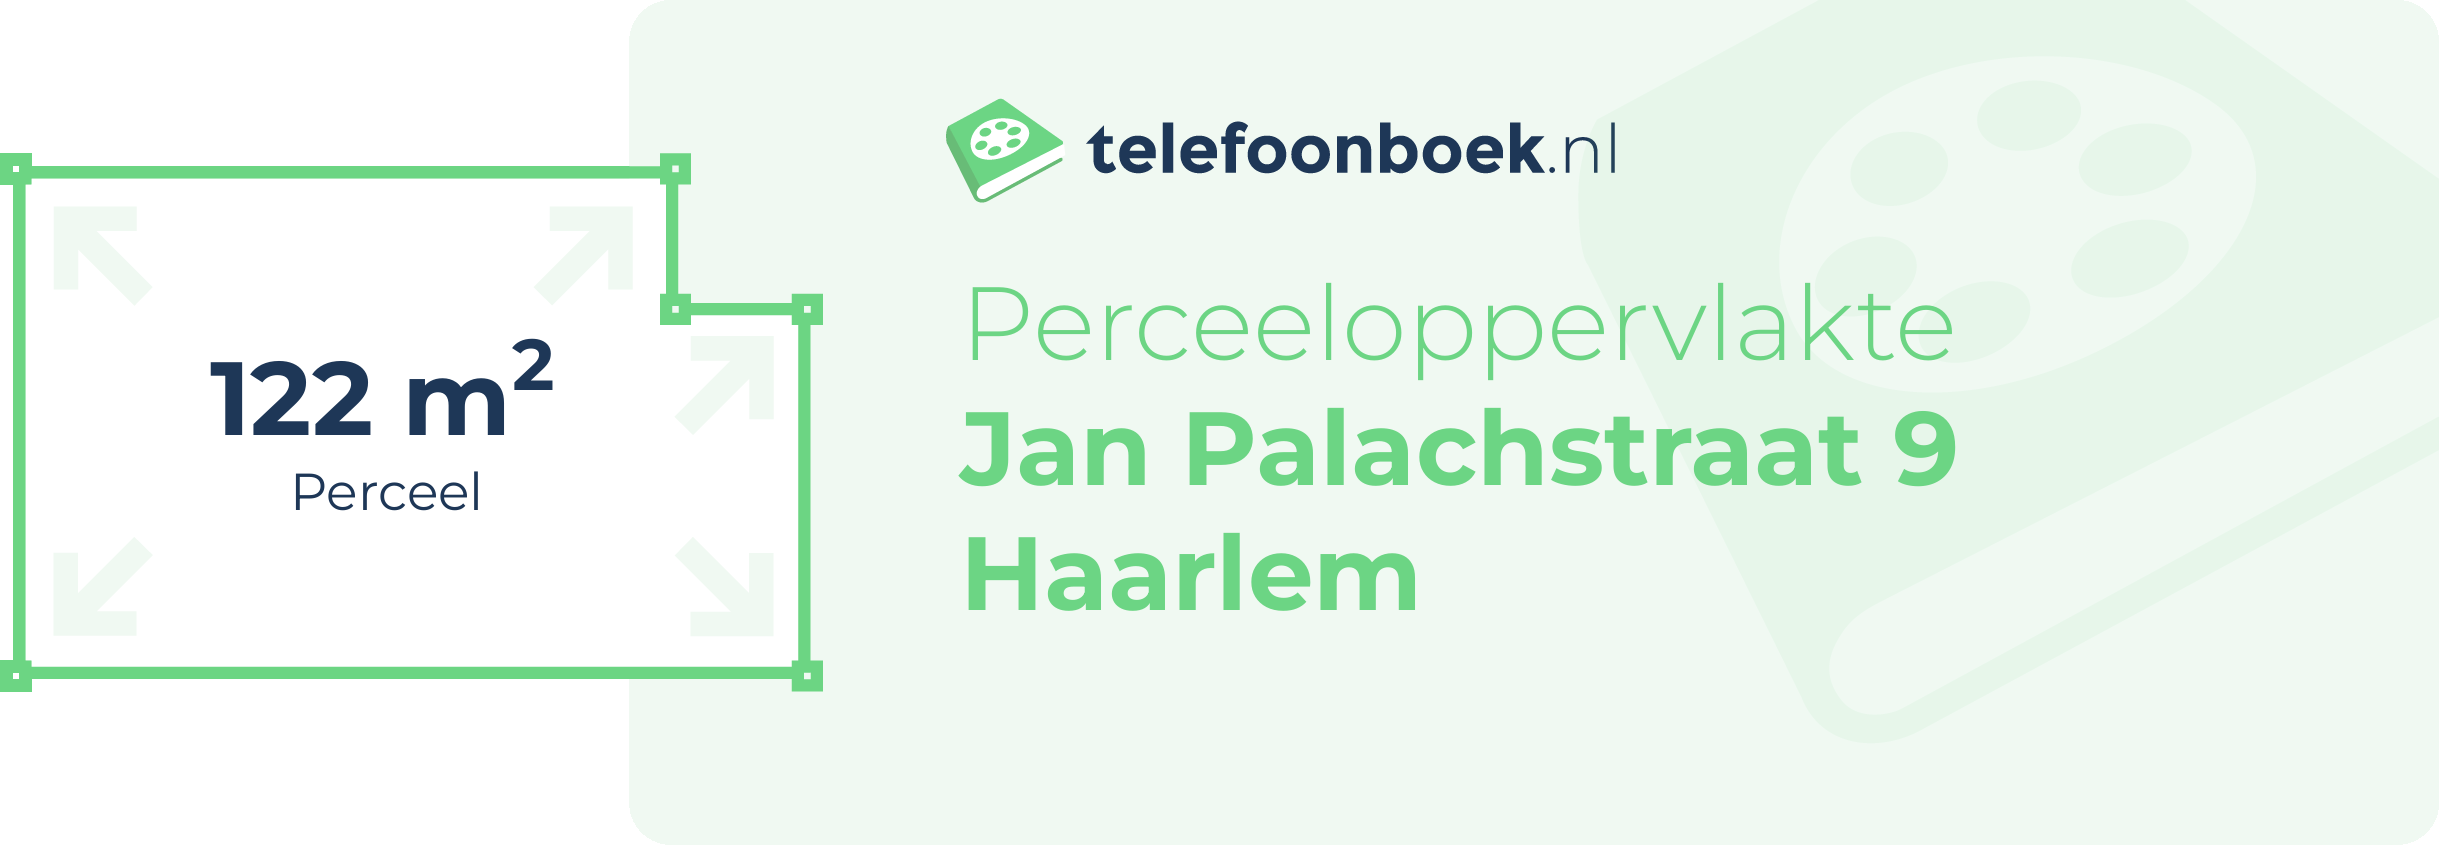 Perceeloppervlakte Jan Palachstraat 9 Haarlem